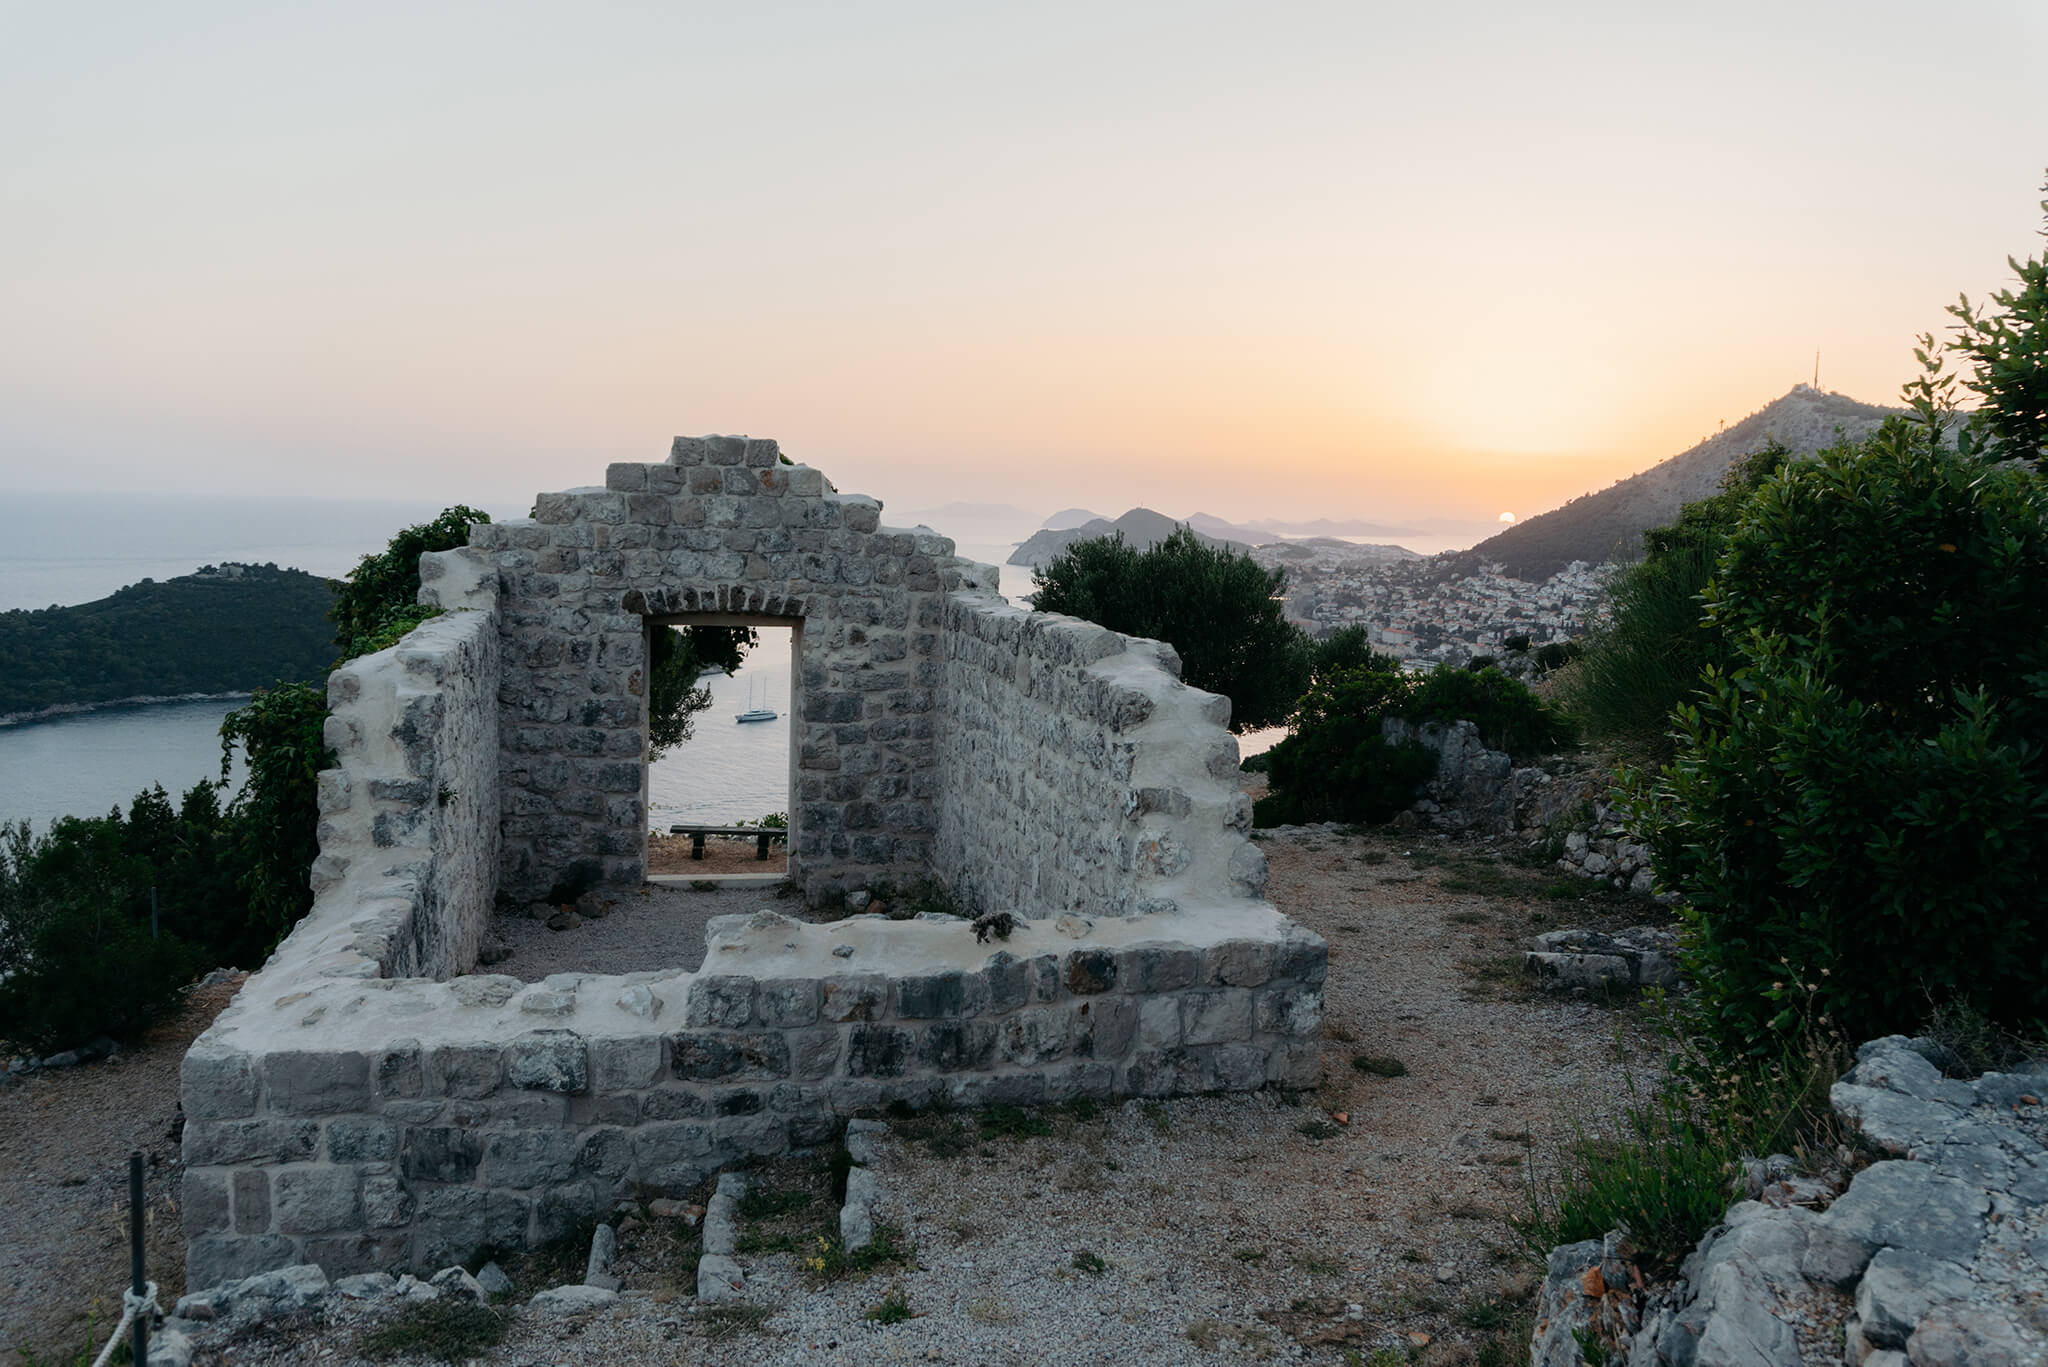 Heiraten in einer Ruine mit Meerblick in Dalmatien, Kroatien